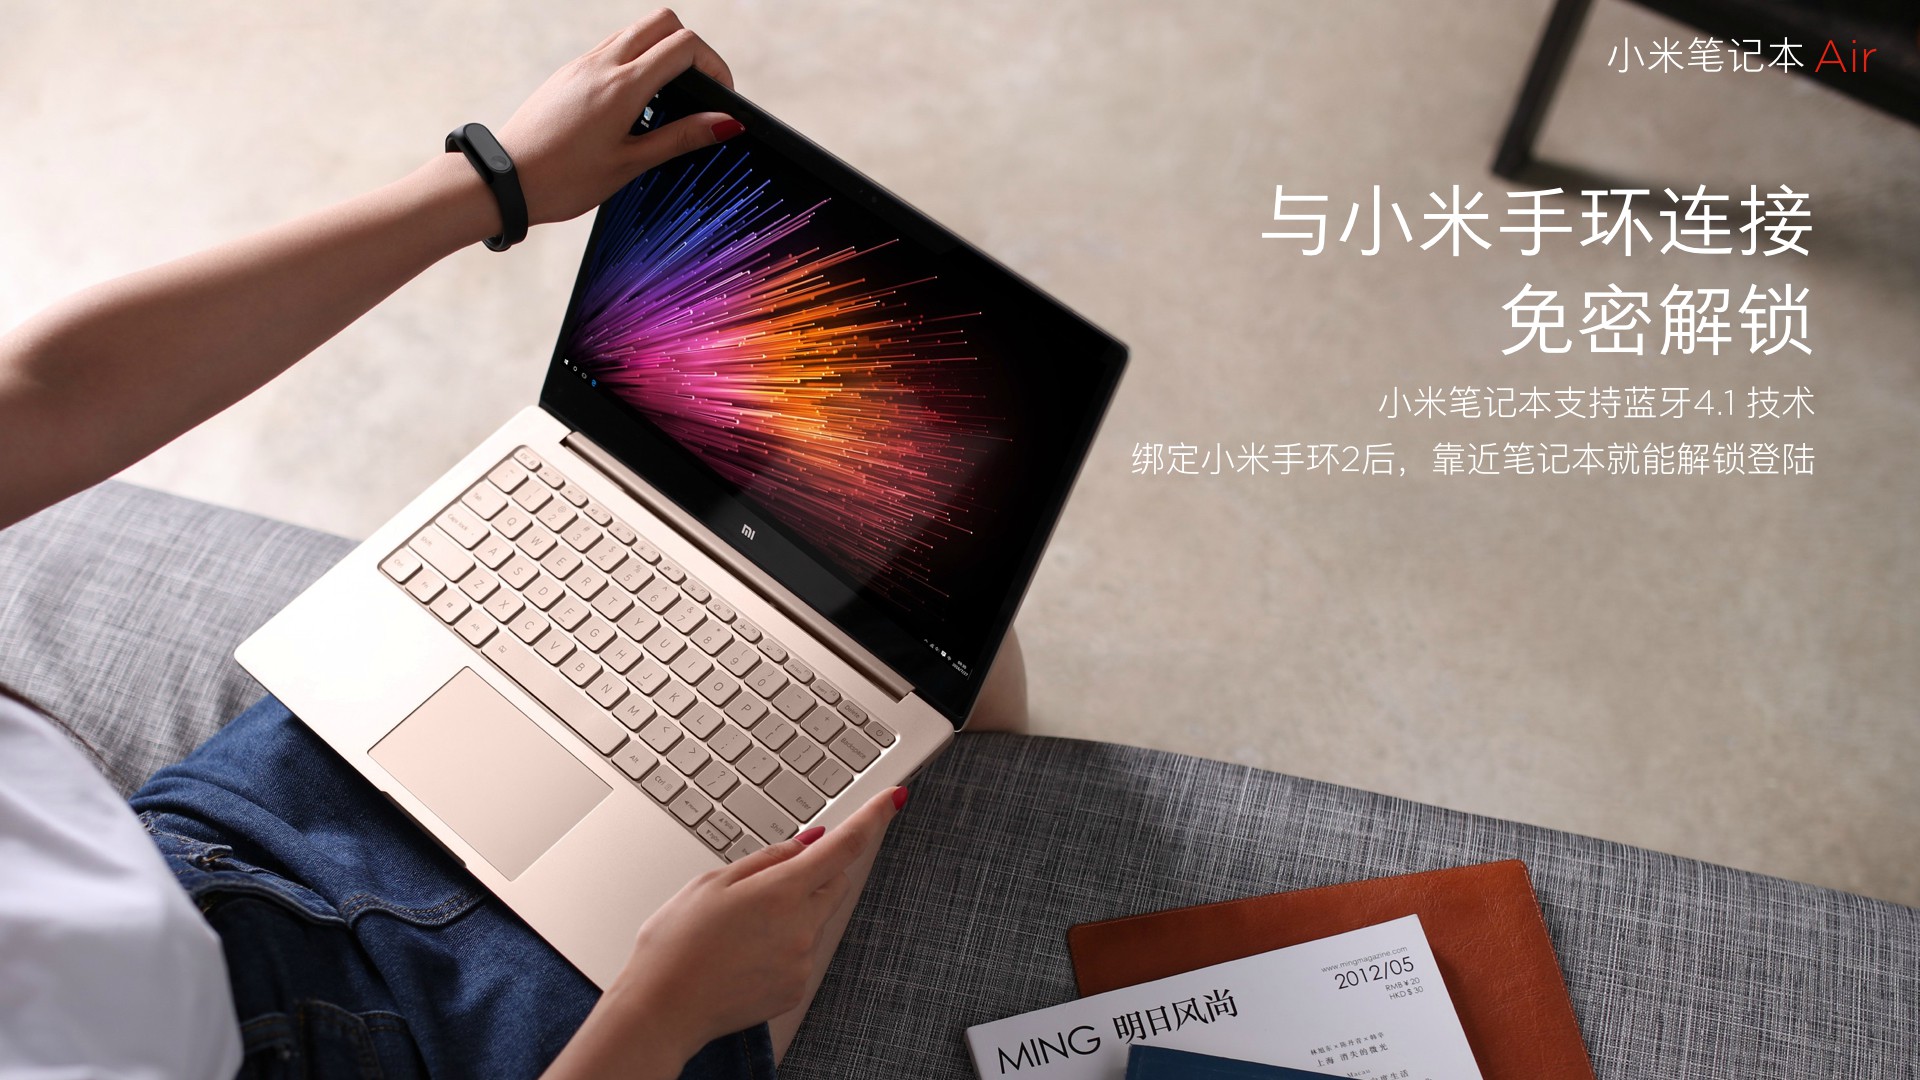 Xiaomi Mi Notebook Air 12.5 e 13.3